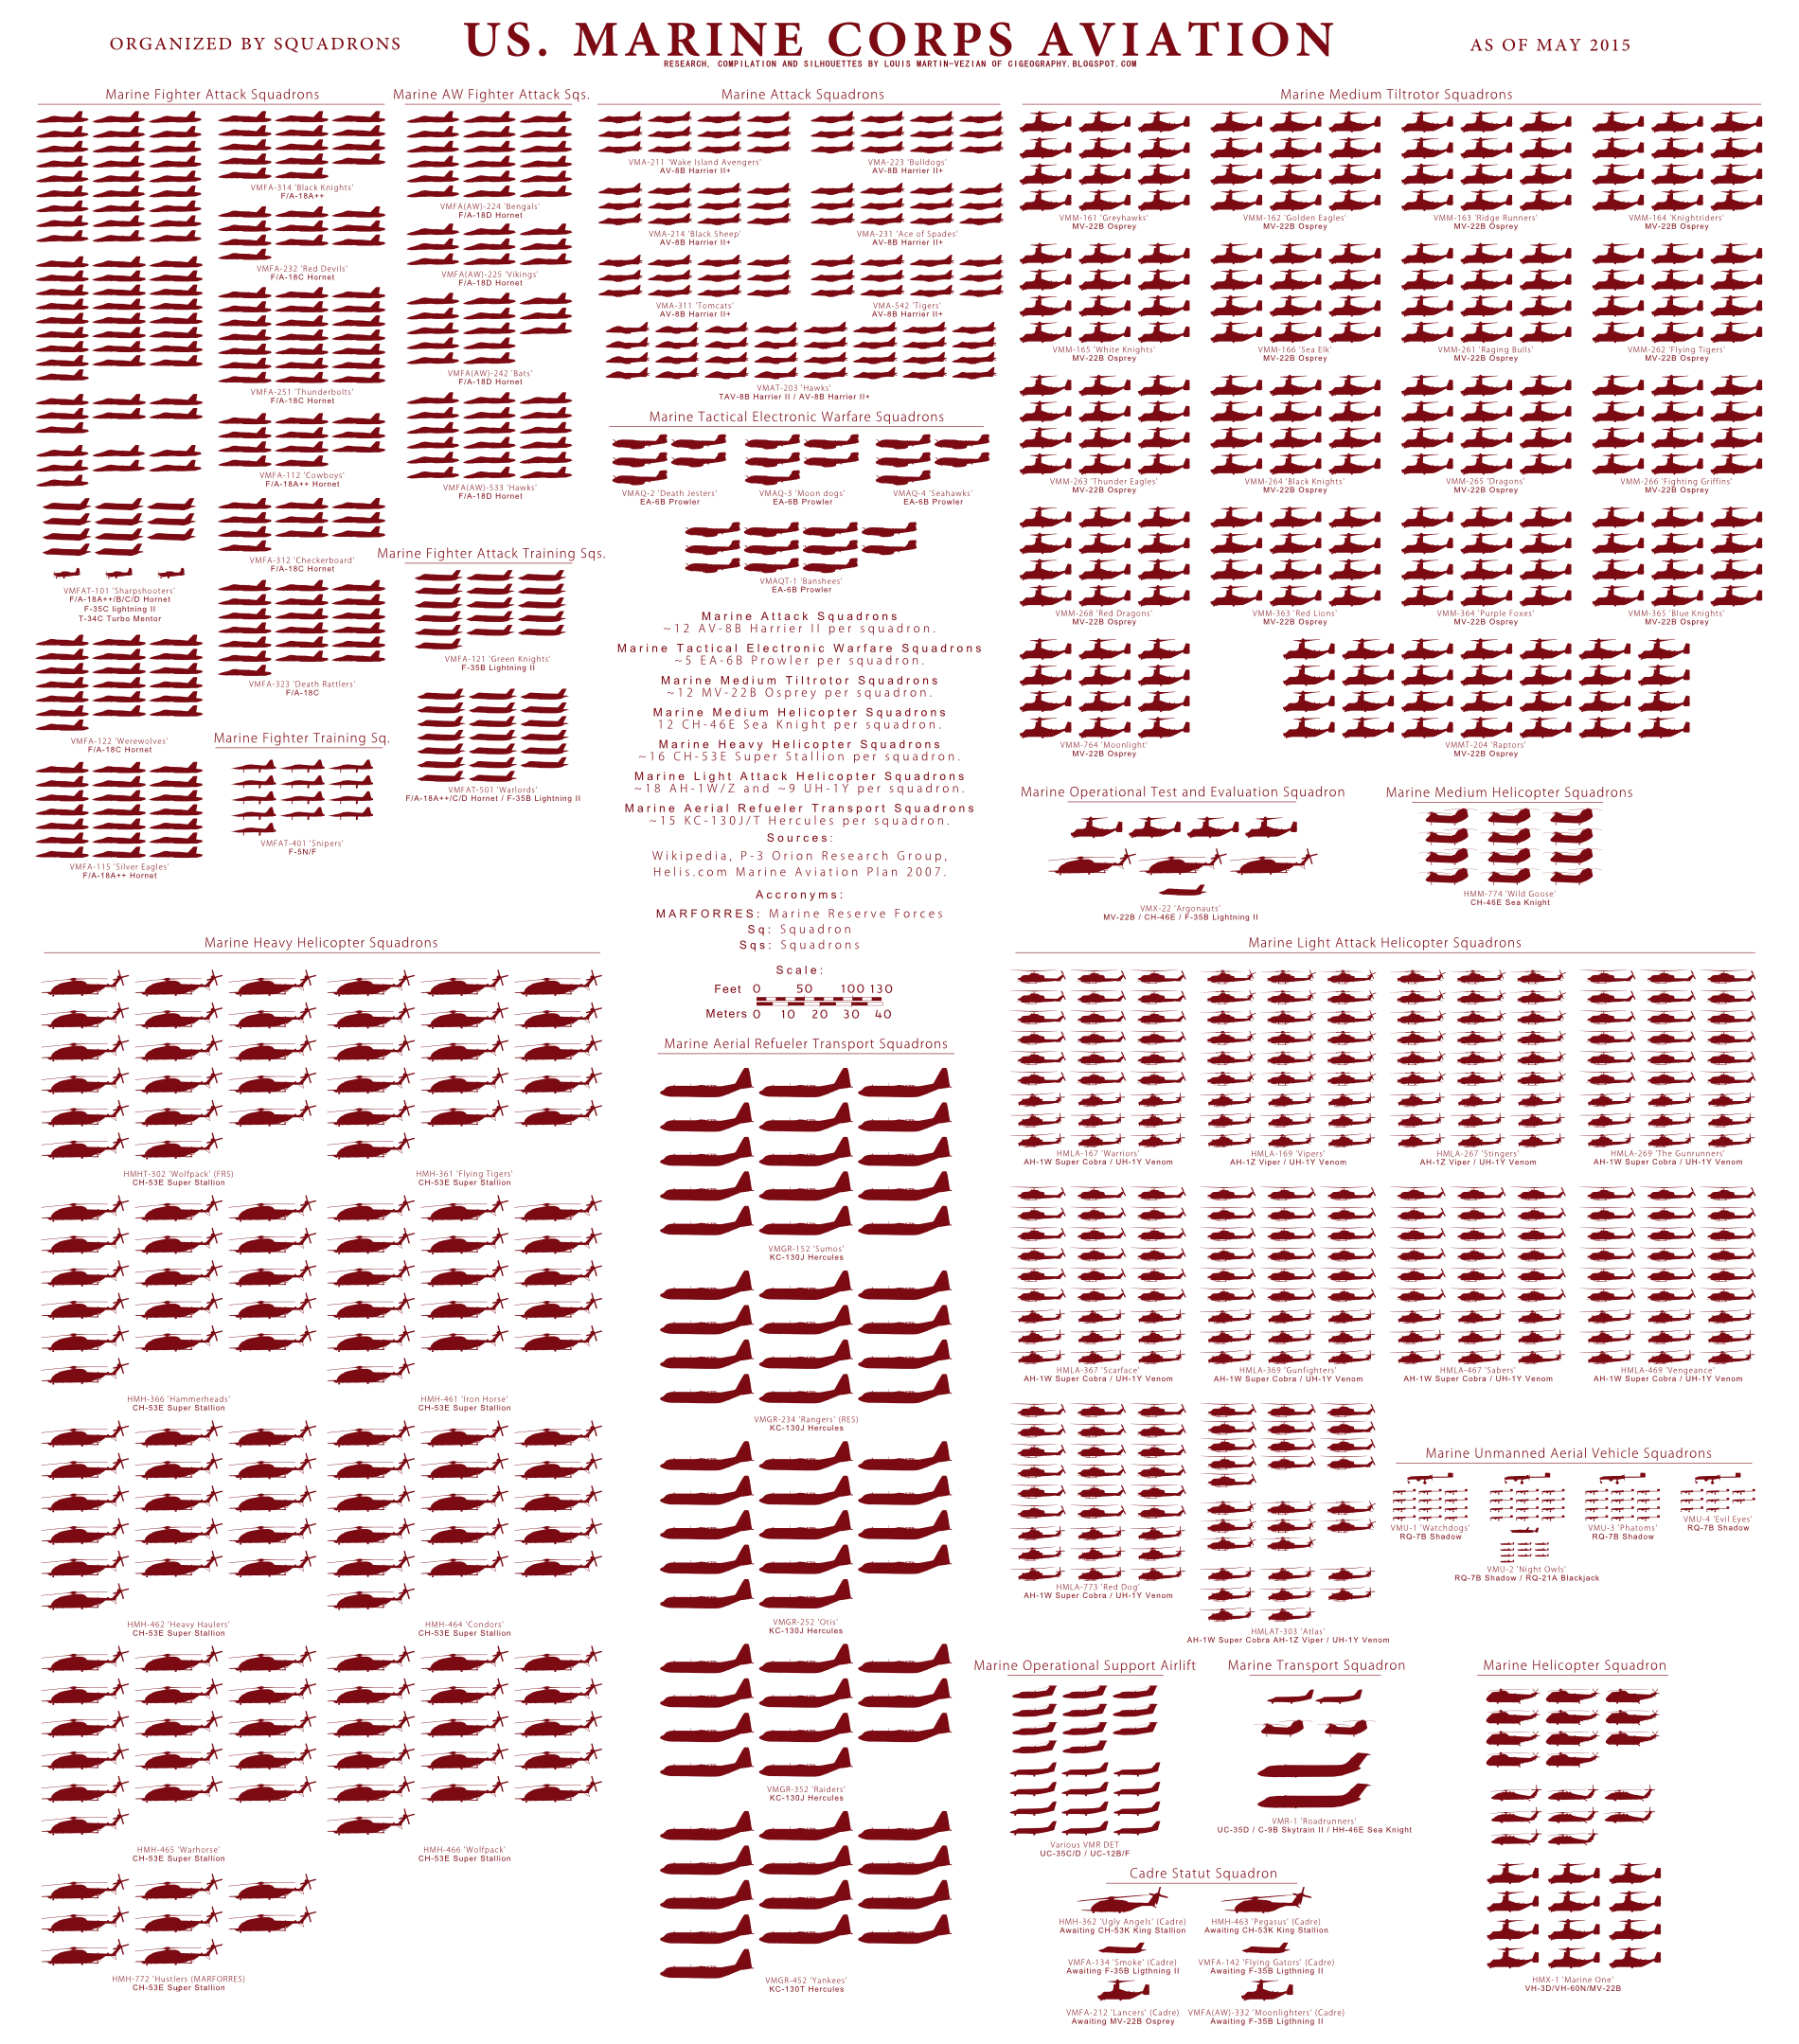 Marine Military Pay Chart 2015